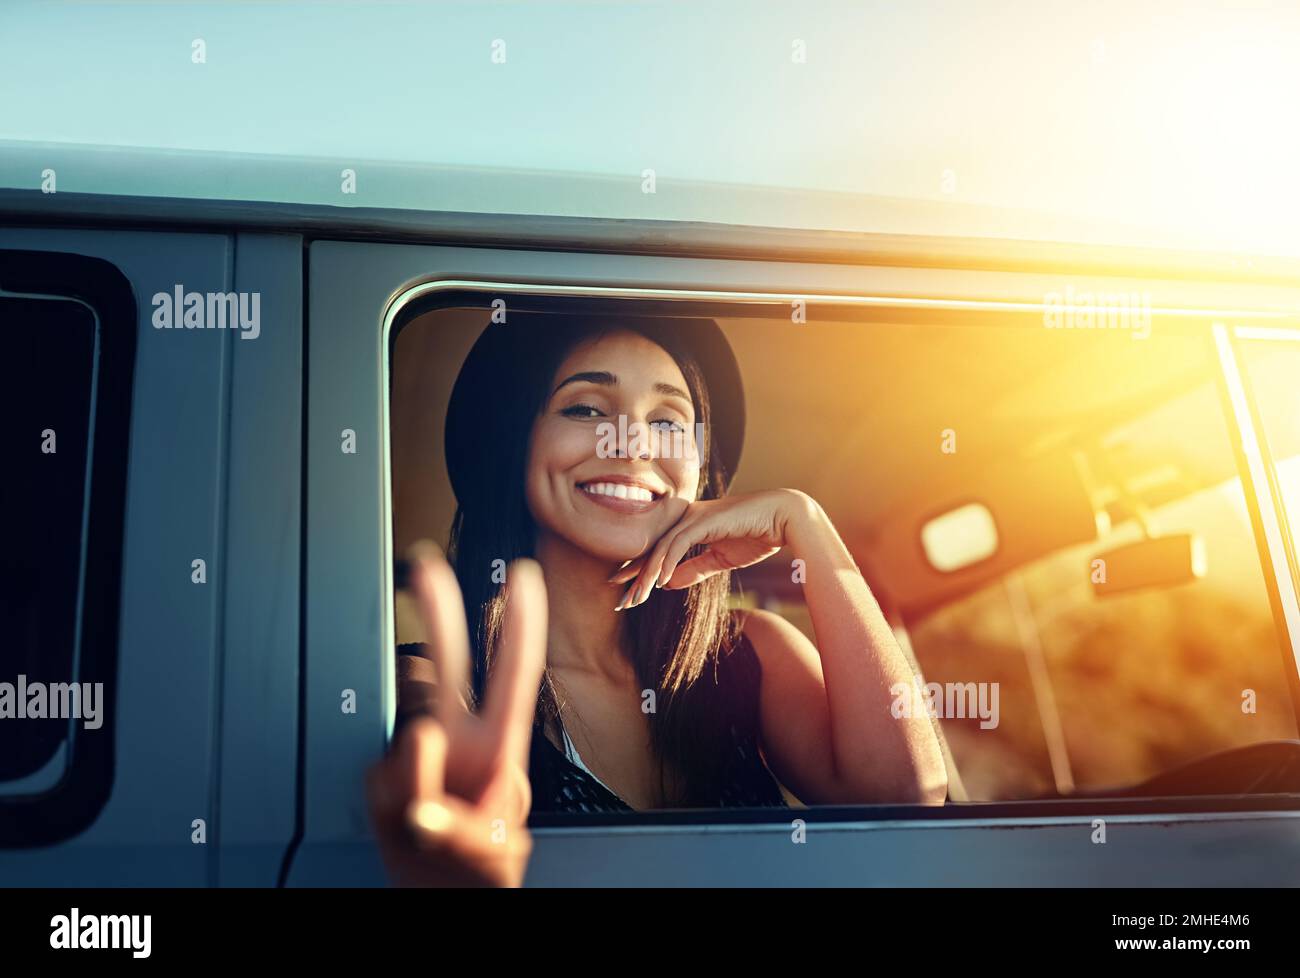 Bon voyage. une jeune femme s'est penchée hors de la fenêtre d'un minibus et montrant un signe de paix sur un voyage. Banque D'Images